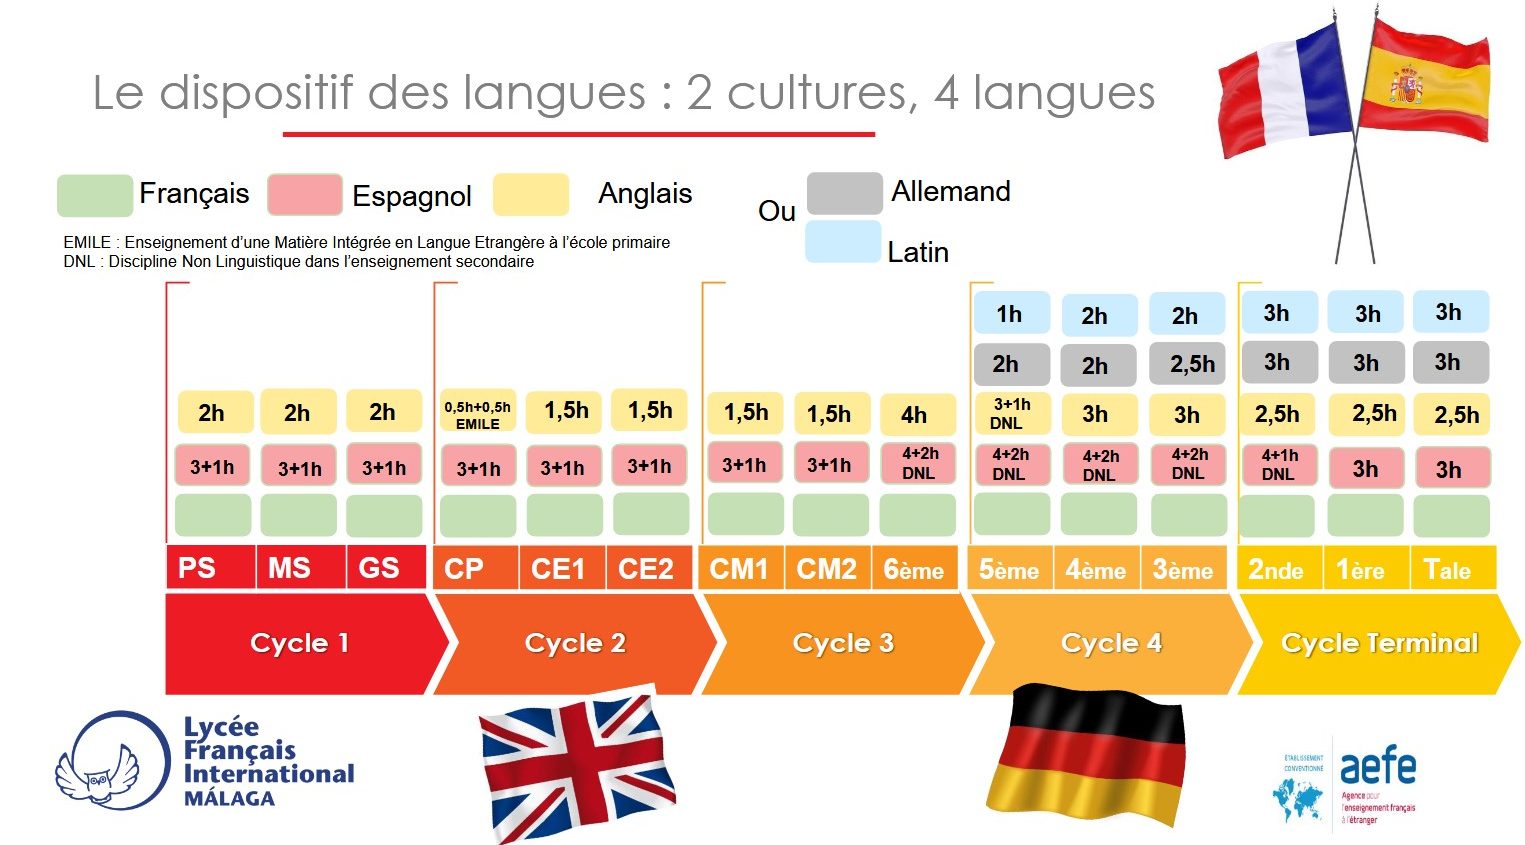 Le dispositif des langues : 2 cultures, 4 langues